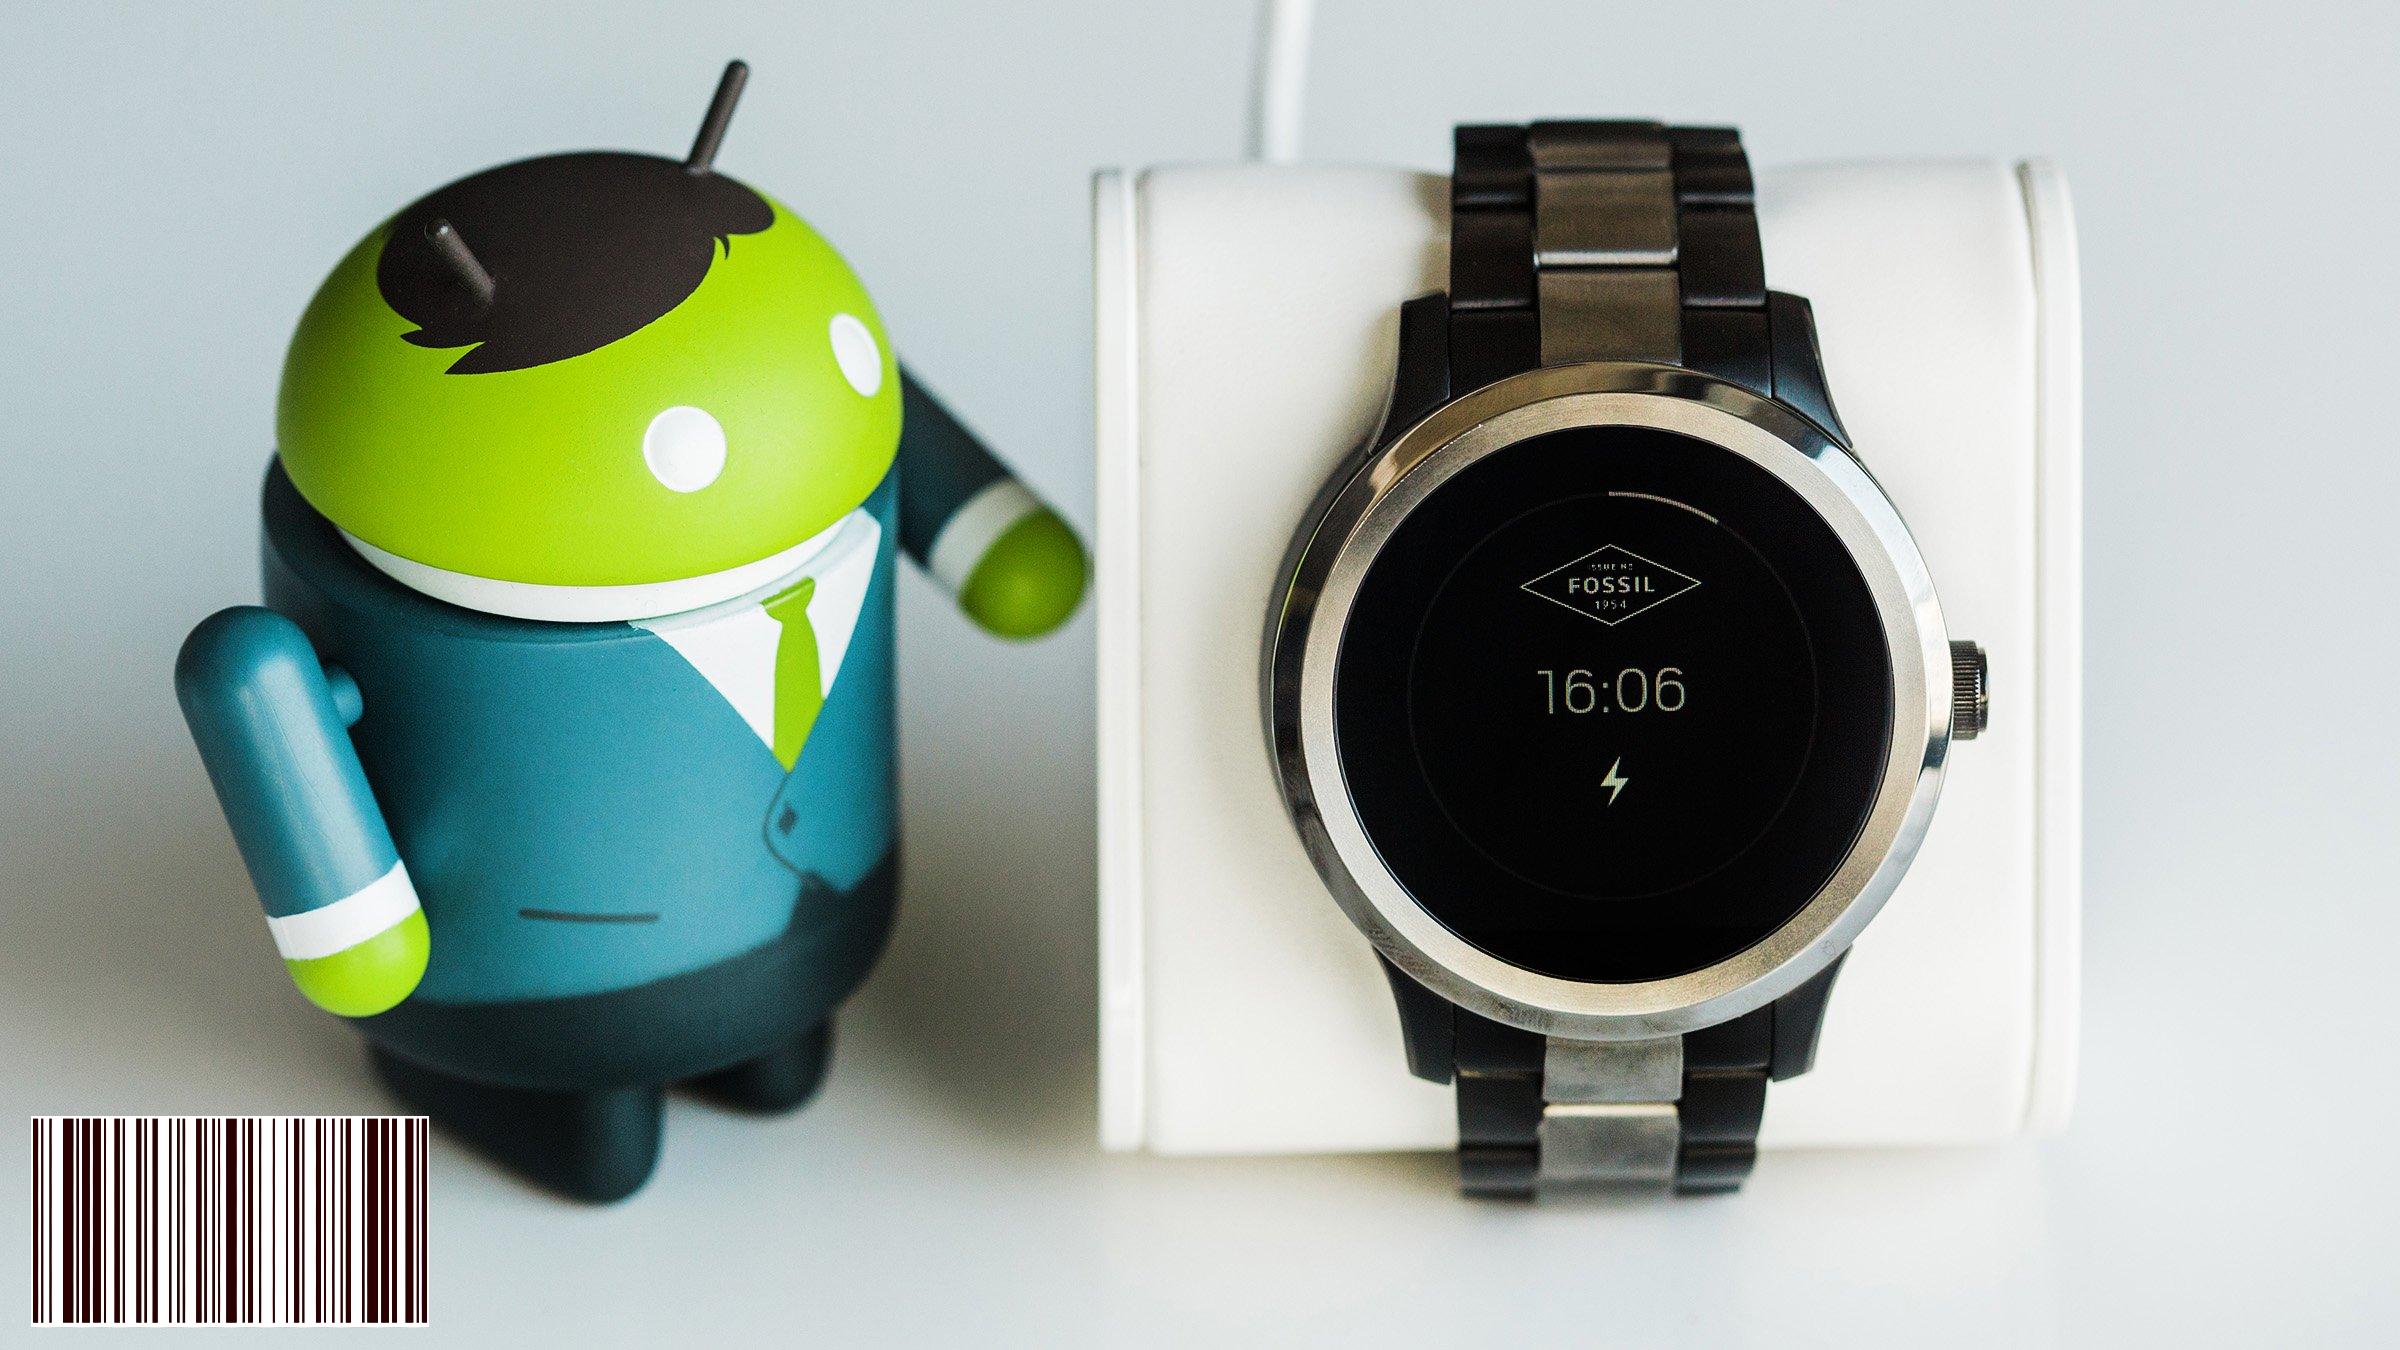 هذه هي الساعات الذكية التي ستتلقى Android Wear 2.0